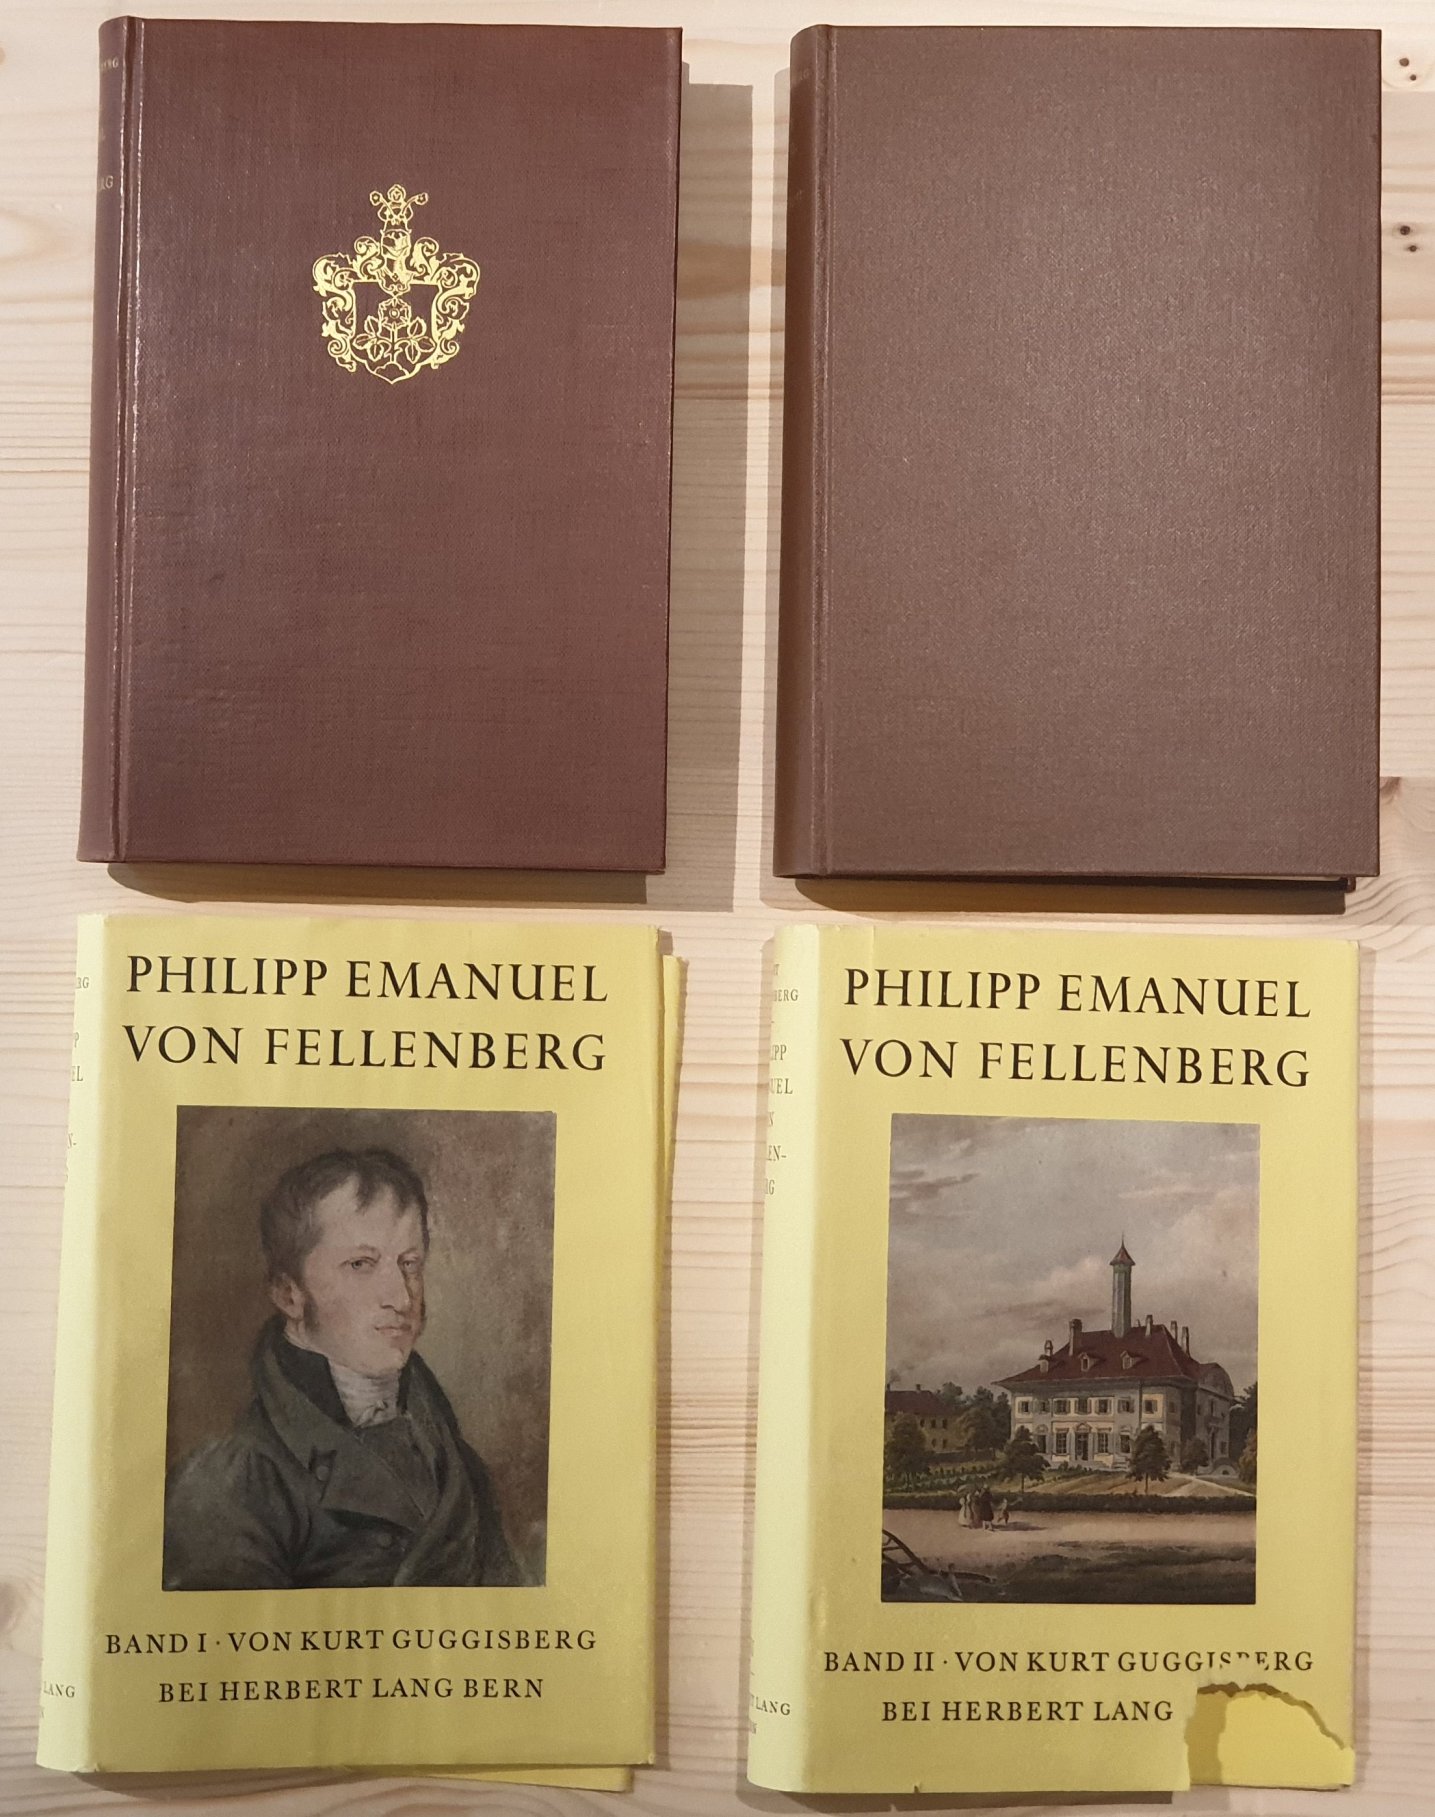 Guggisberg, Kurt:  Philipp Emanuel von Fellenberg und sein Erziehungsstaat. 